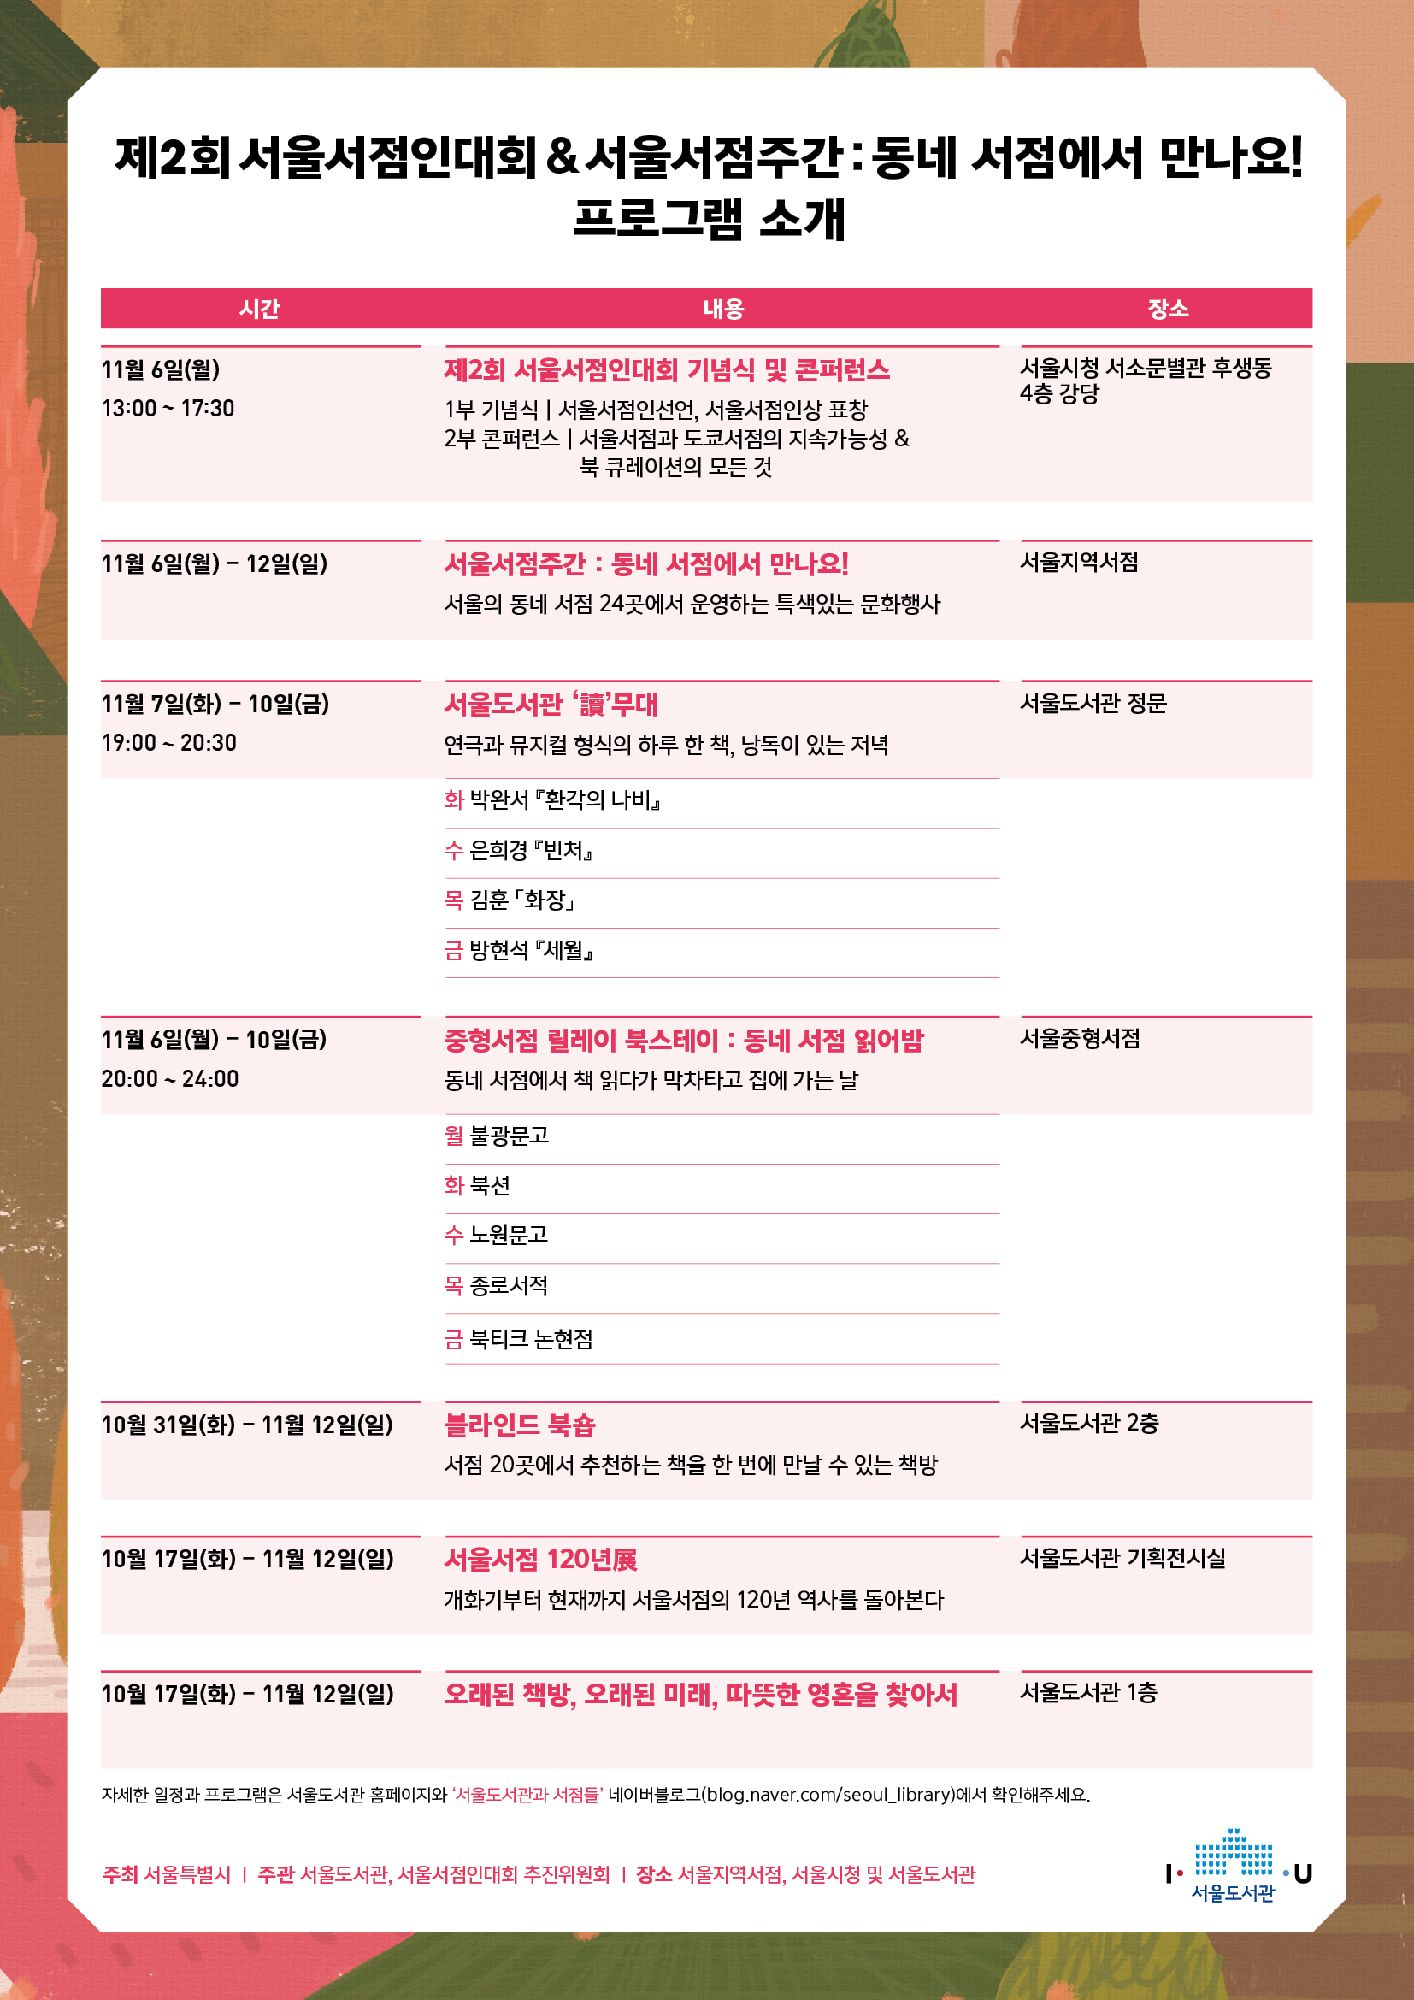 [행사] 제2회 서울서점인대회 & 서울서점주간 안내 포스터